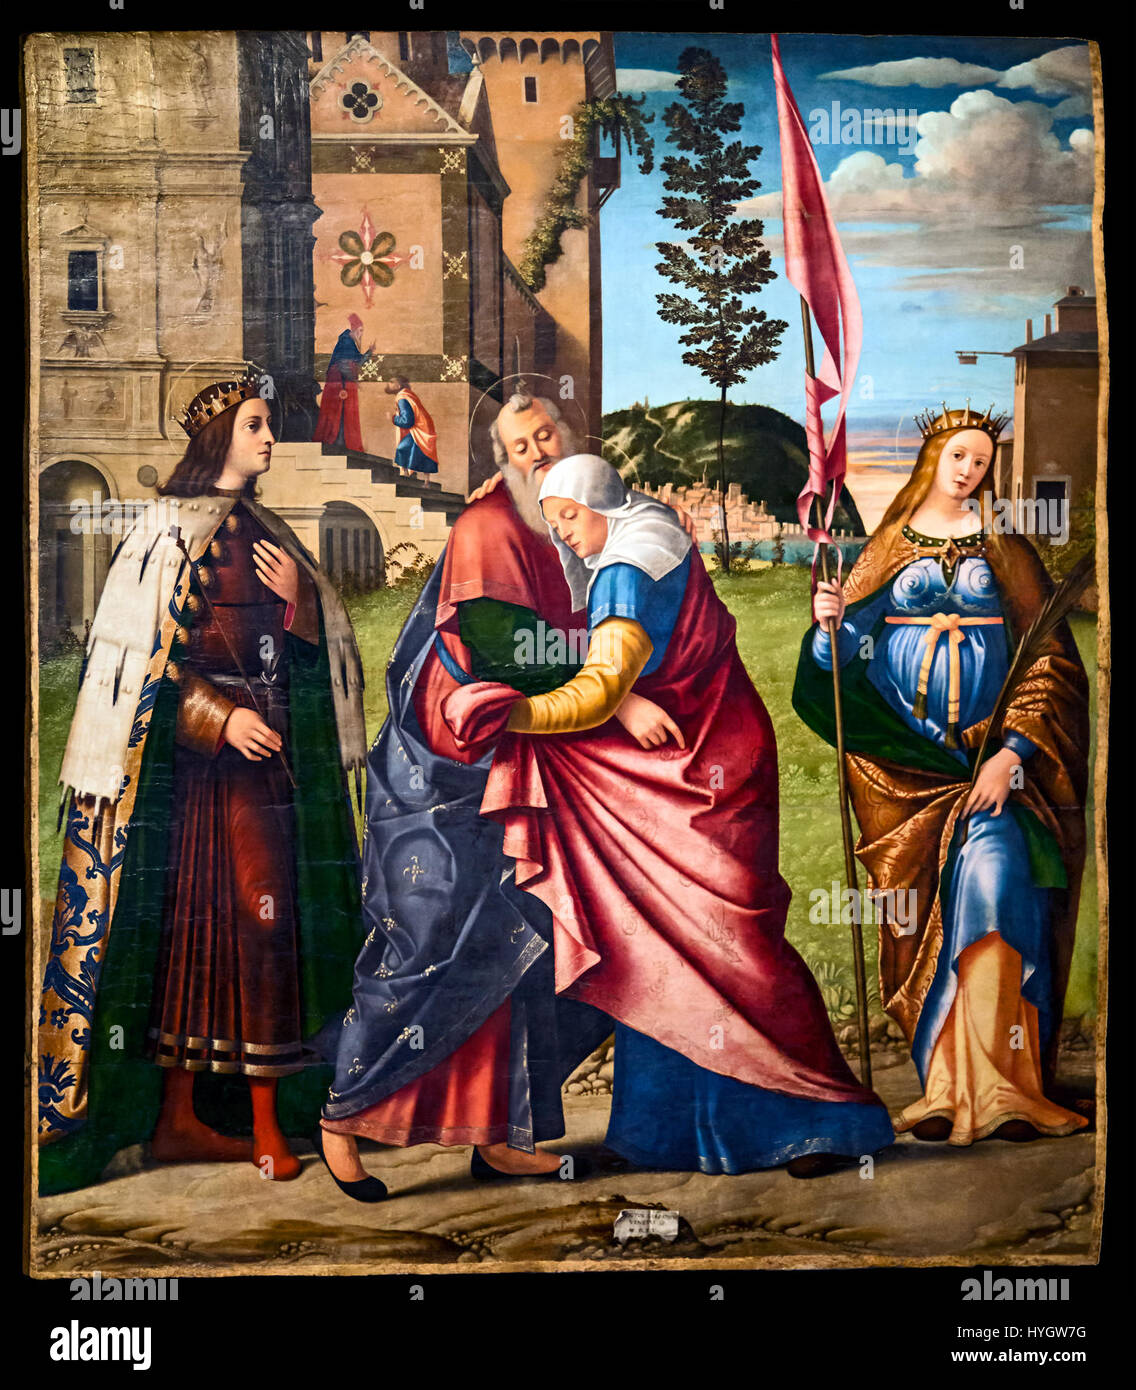 Accademia   Incontro di Gioacchino e Anna con san Luigi IX e santa Libera   Carpaccio Stock Photo